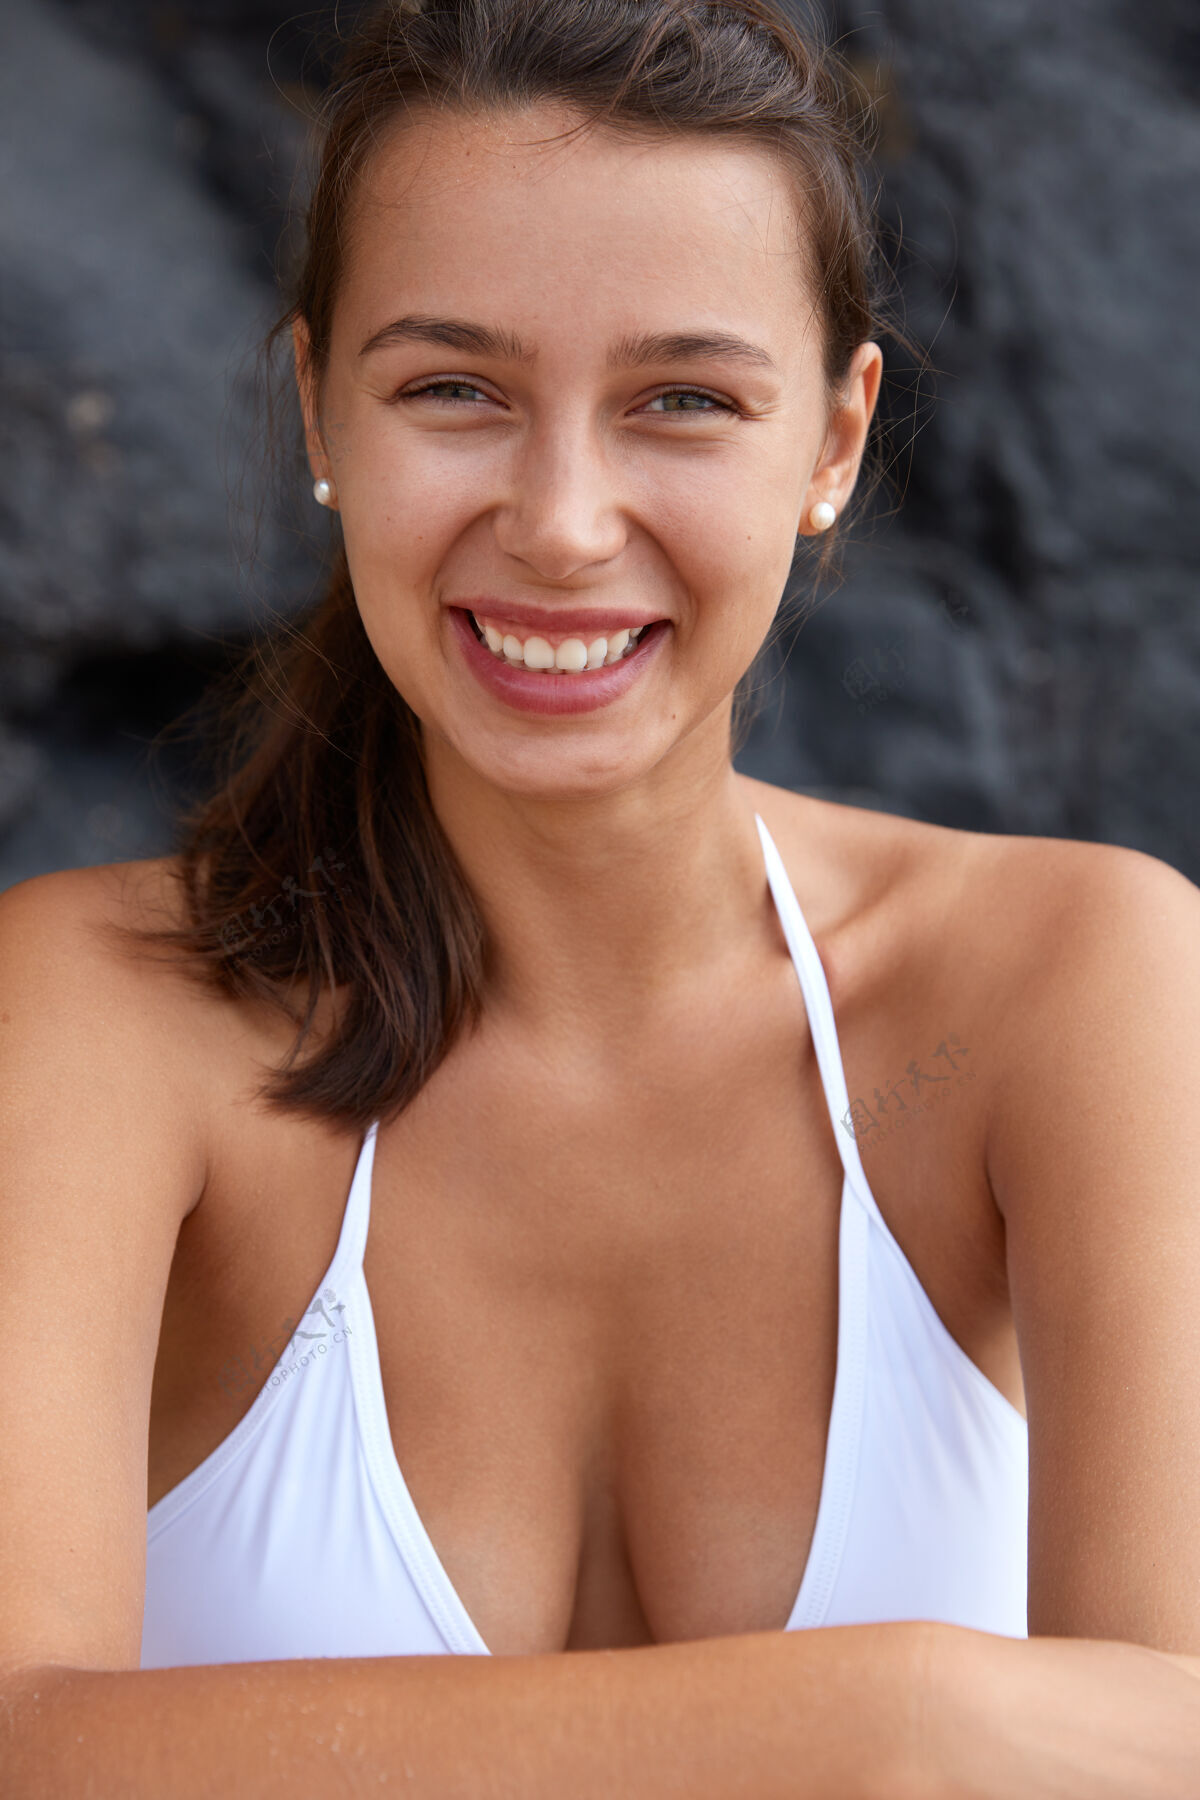 岩石快乐的女人 牙齿般的微笑 完美的胸部 看起来很高兴 穿着泳装健康海滩自由